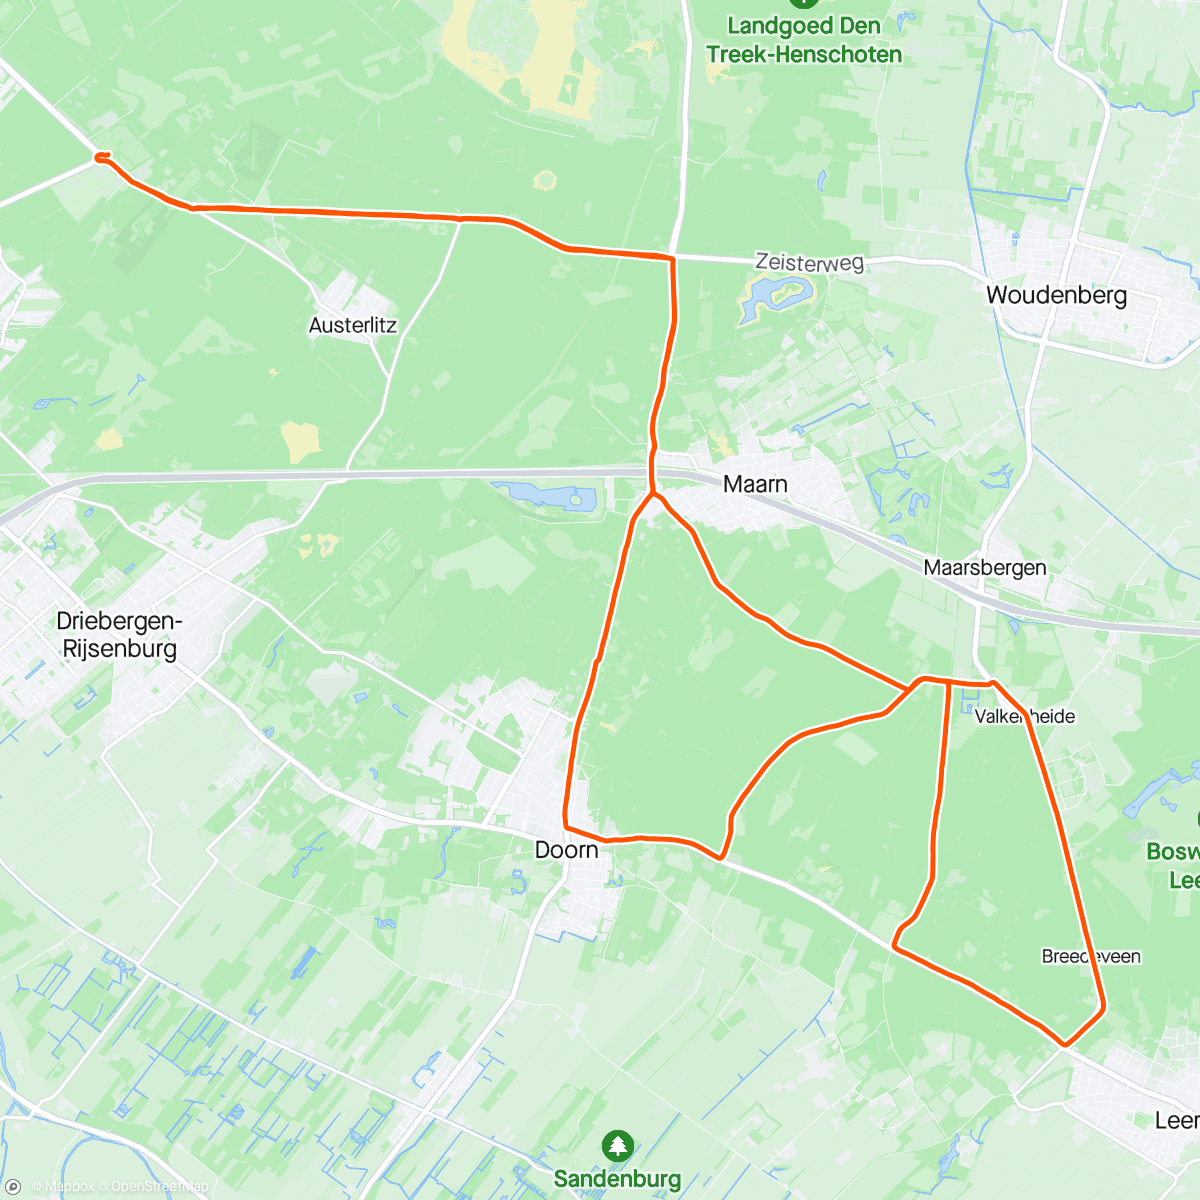 「Rondje met Jan en Karel」活動的地圖